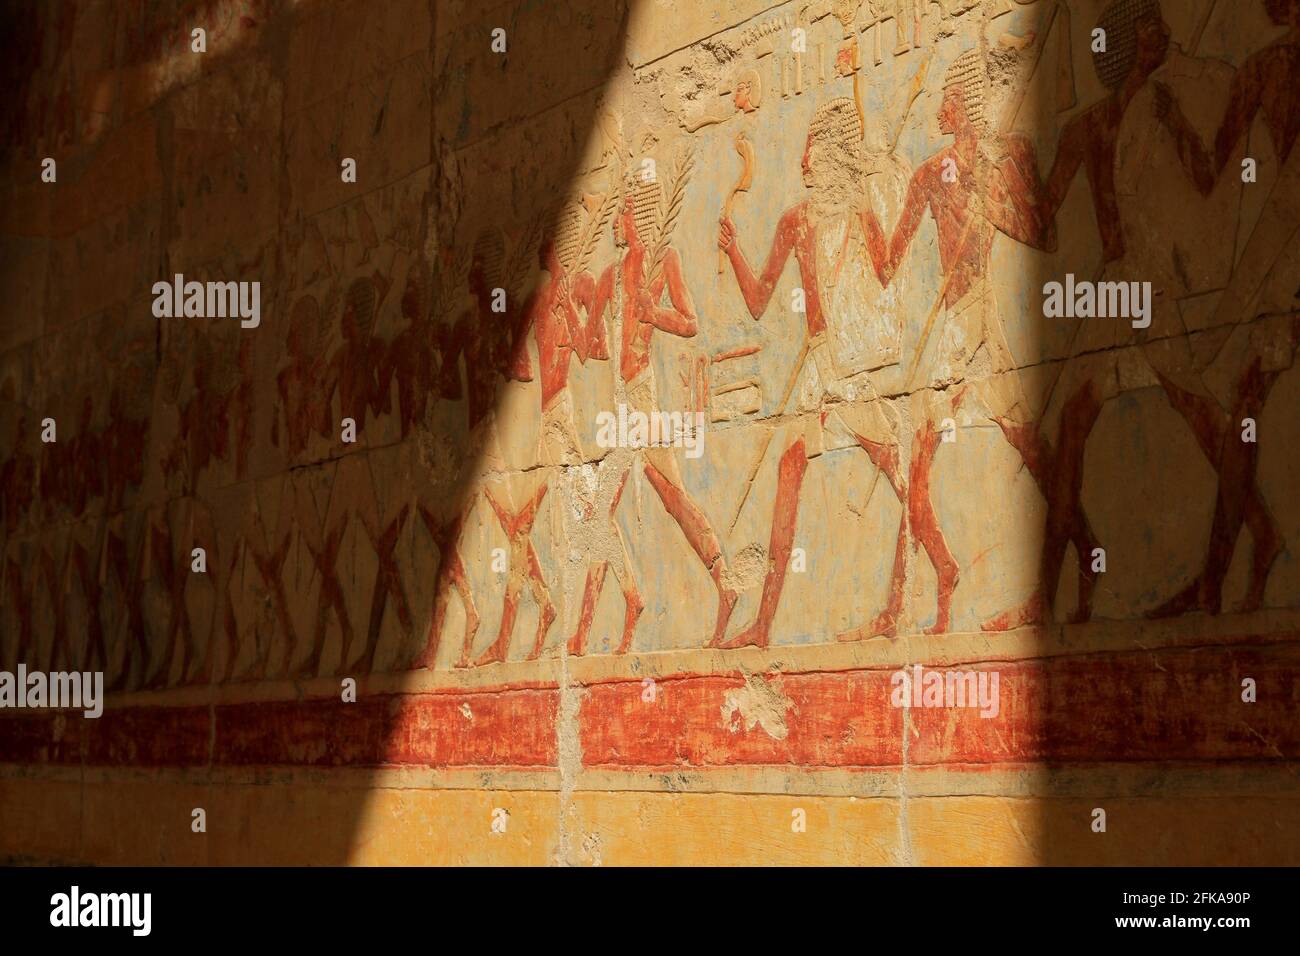 Pintó jeroglíficos en la pared del Templo Mortuorio de Hatshepsut, cerca del Valle de los Reyes, Egipto Foto de stock